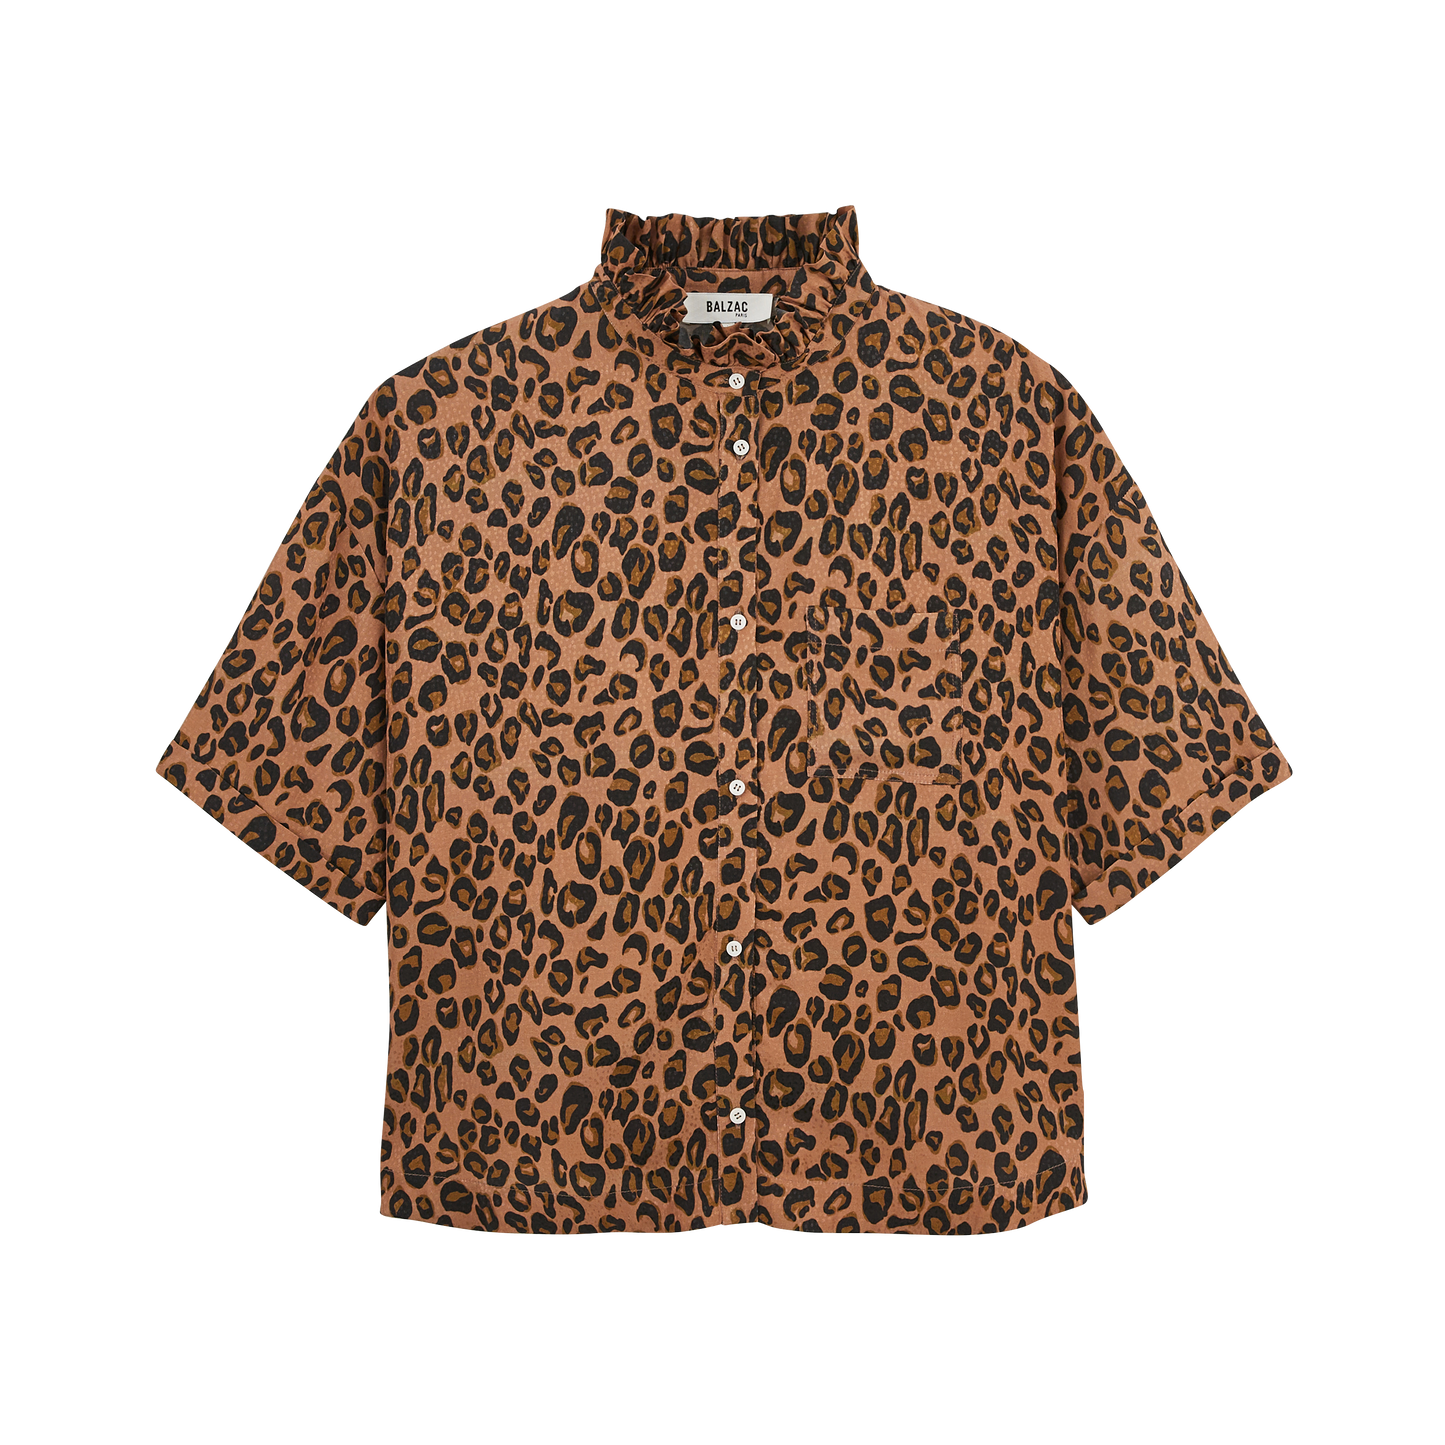 Gladiolus leopard shirt